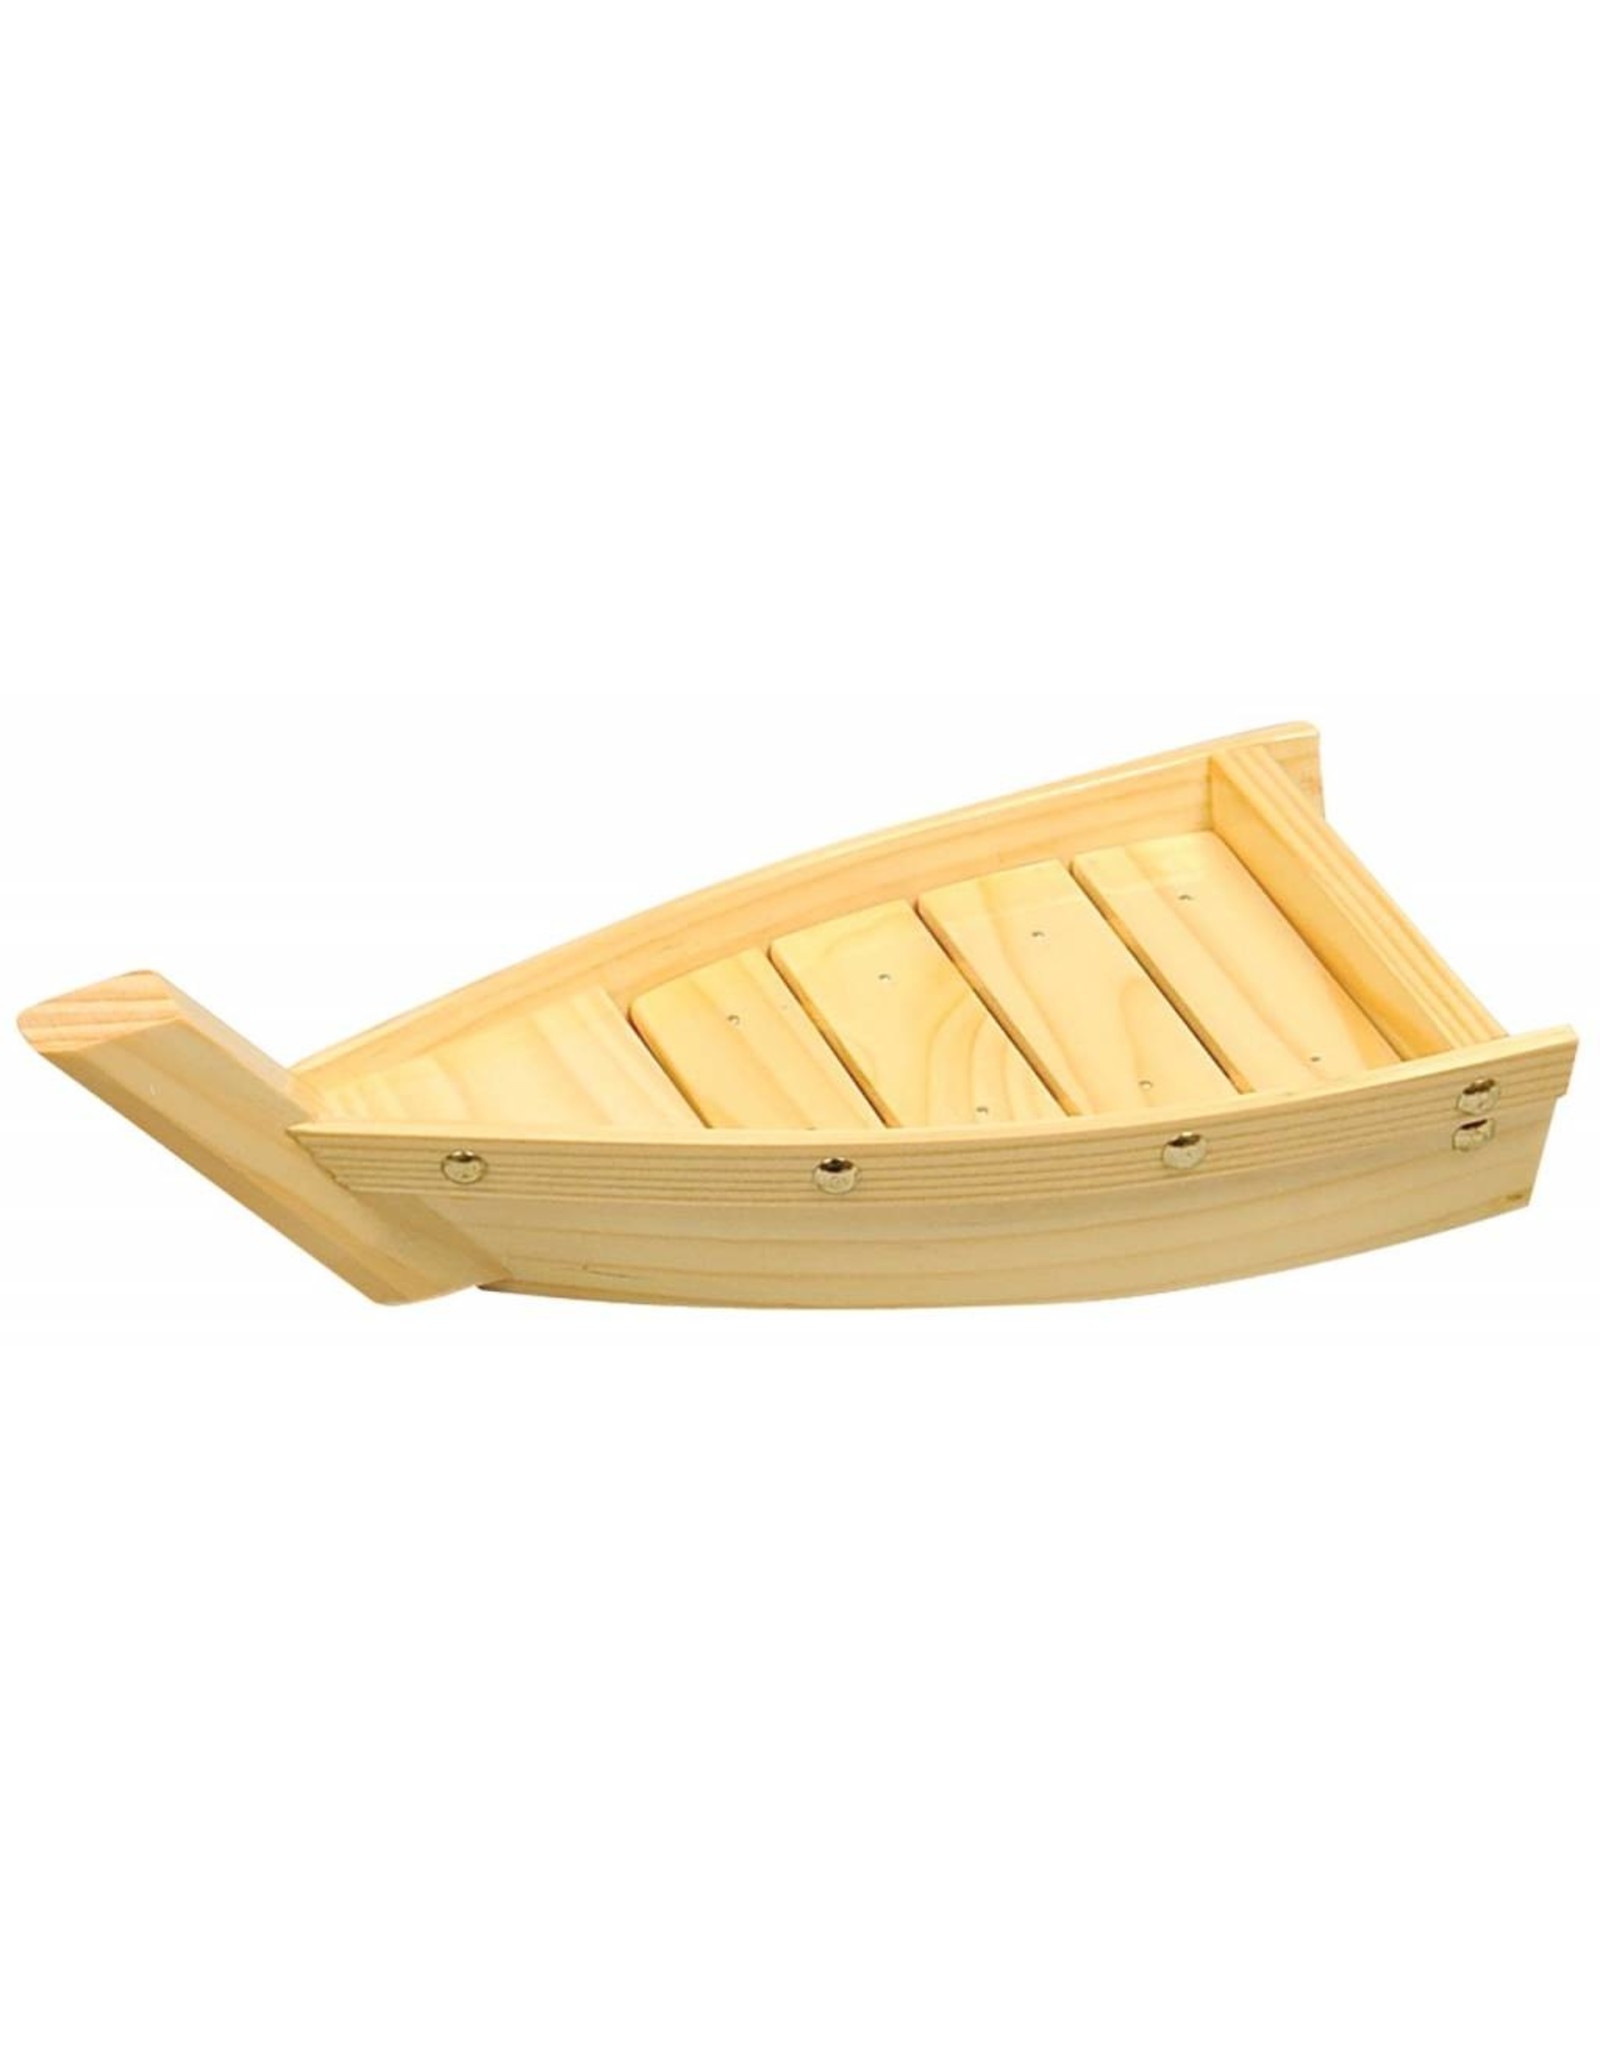 Houten Sushi Boot 30x14cm, Wooden Sushi Boat